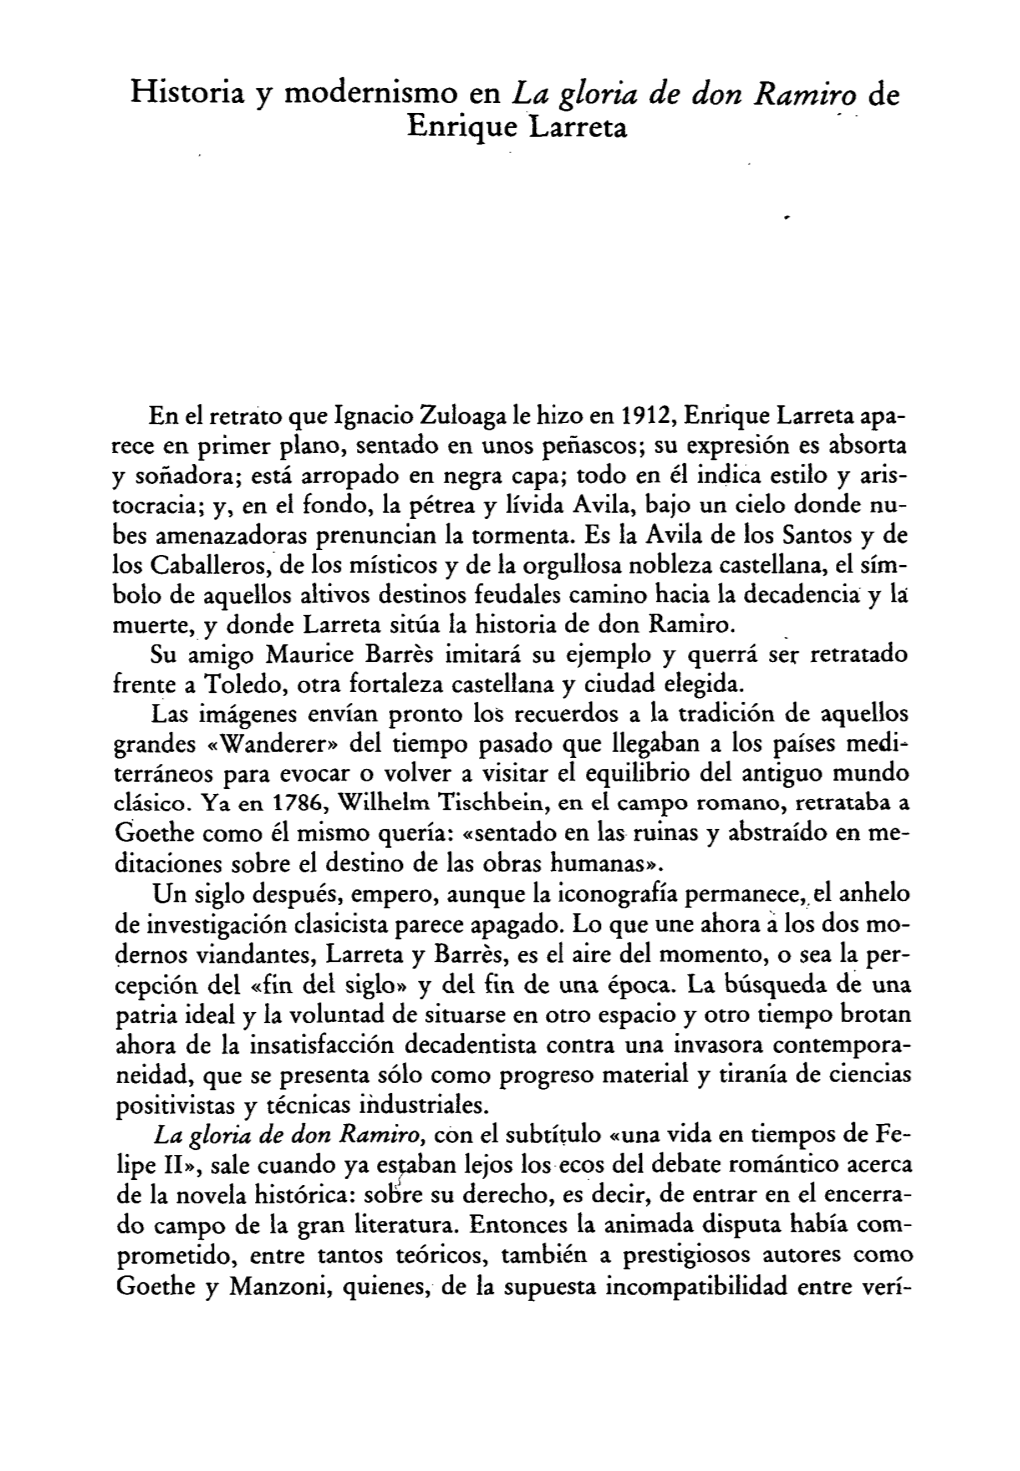 Historia Y Modernismo En "La Gloria De Don Ramiro", De Enrique Larreta